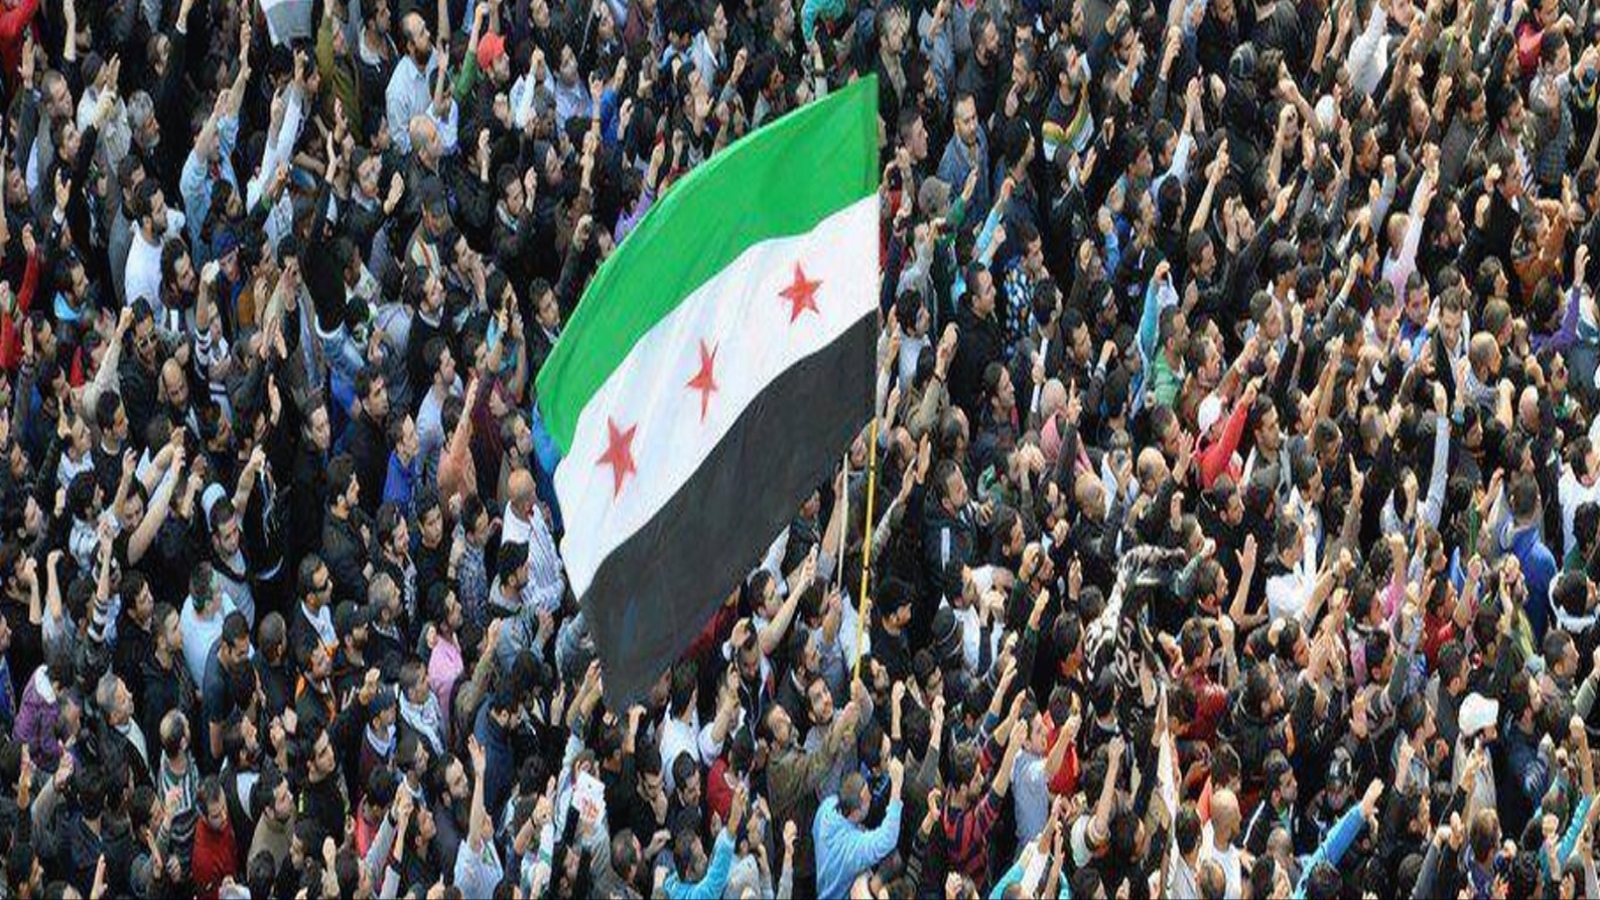 انتصار ثورة الشعب السوري سَيُمَهد الطريق للمزيد من الثورات في المنطقة العربية، وسيخلق حالة انتصار الشعوب على الأنظمة بالقوة، وهذا ما لا يريده أعداء الربيع العربي